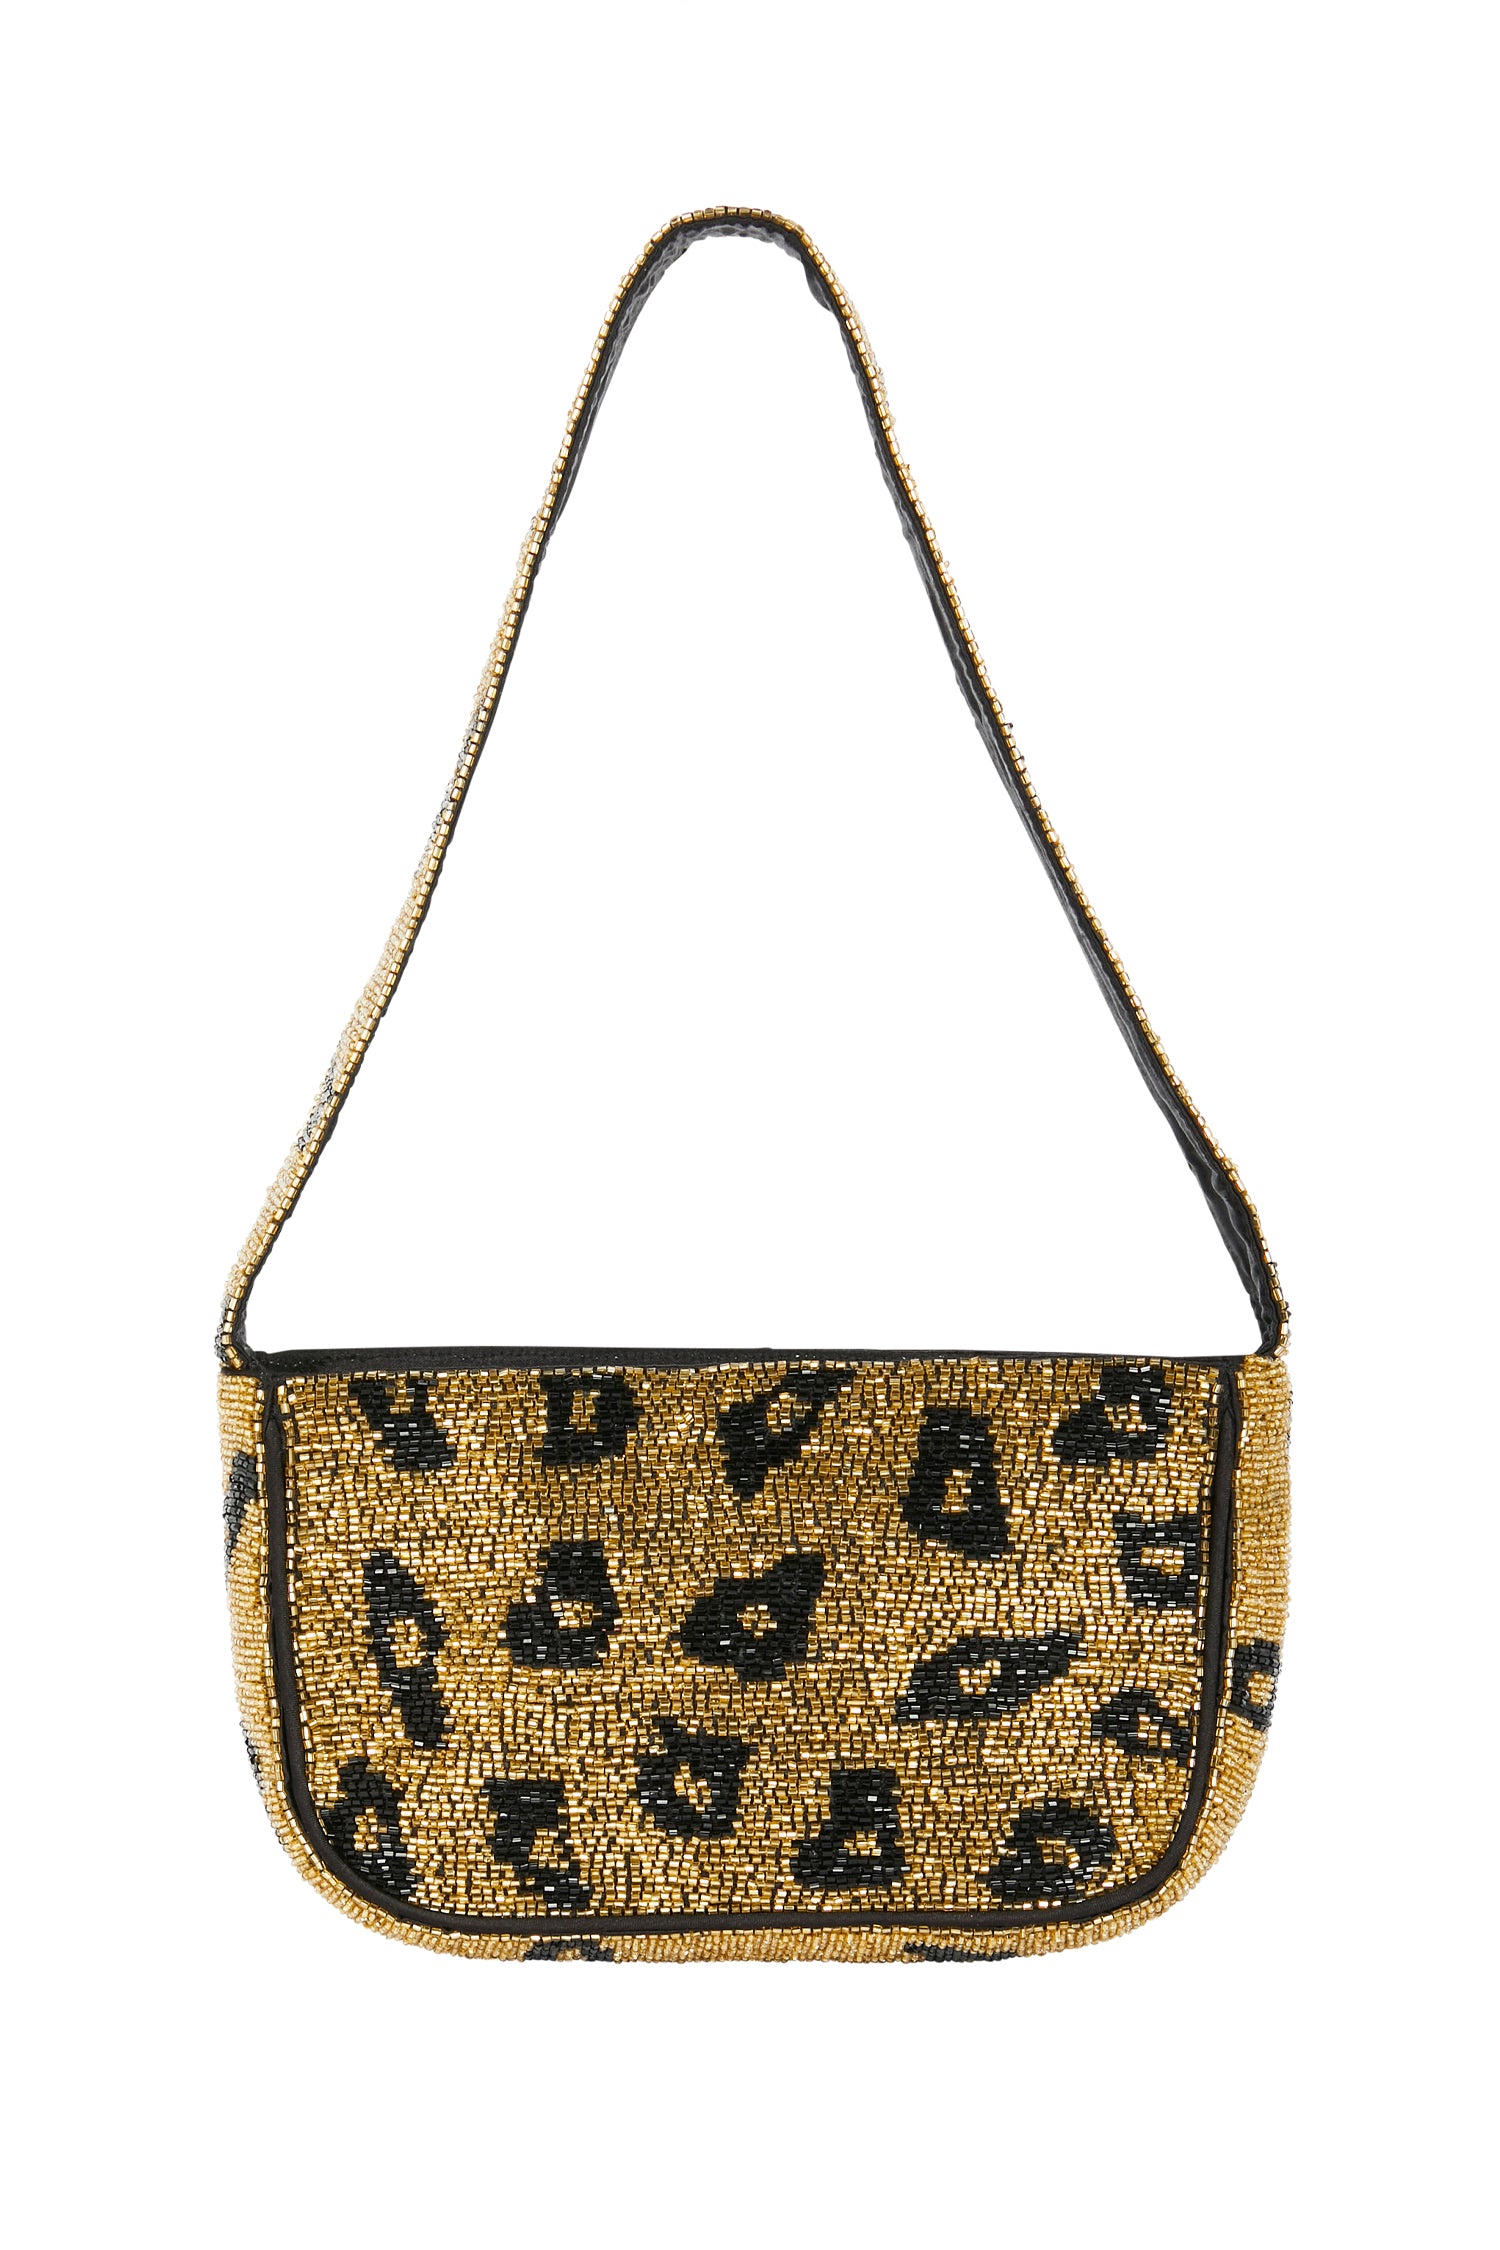 Louis Vuitton - Authenticated Néonoé Handbag - Leather Brown Leopard for Women, Never Worn